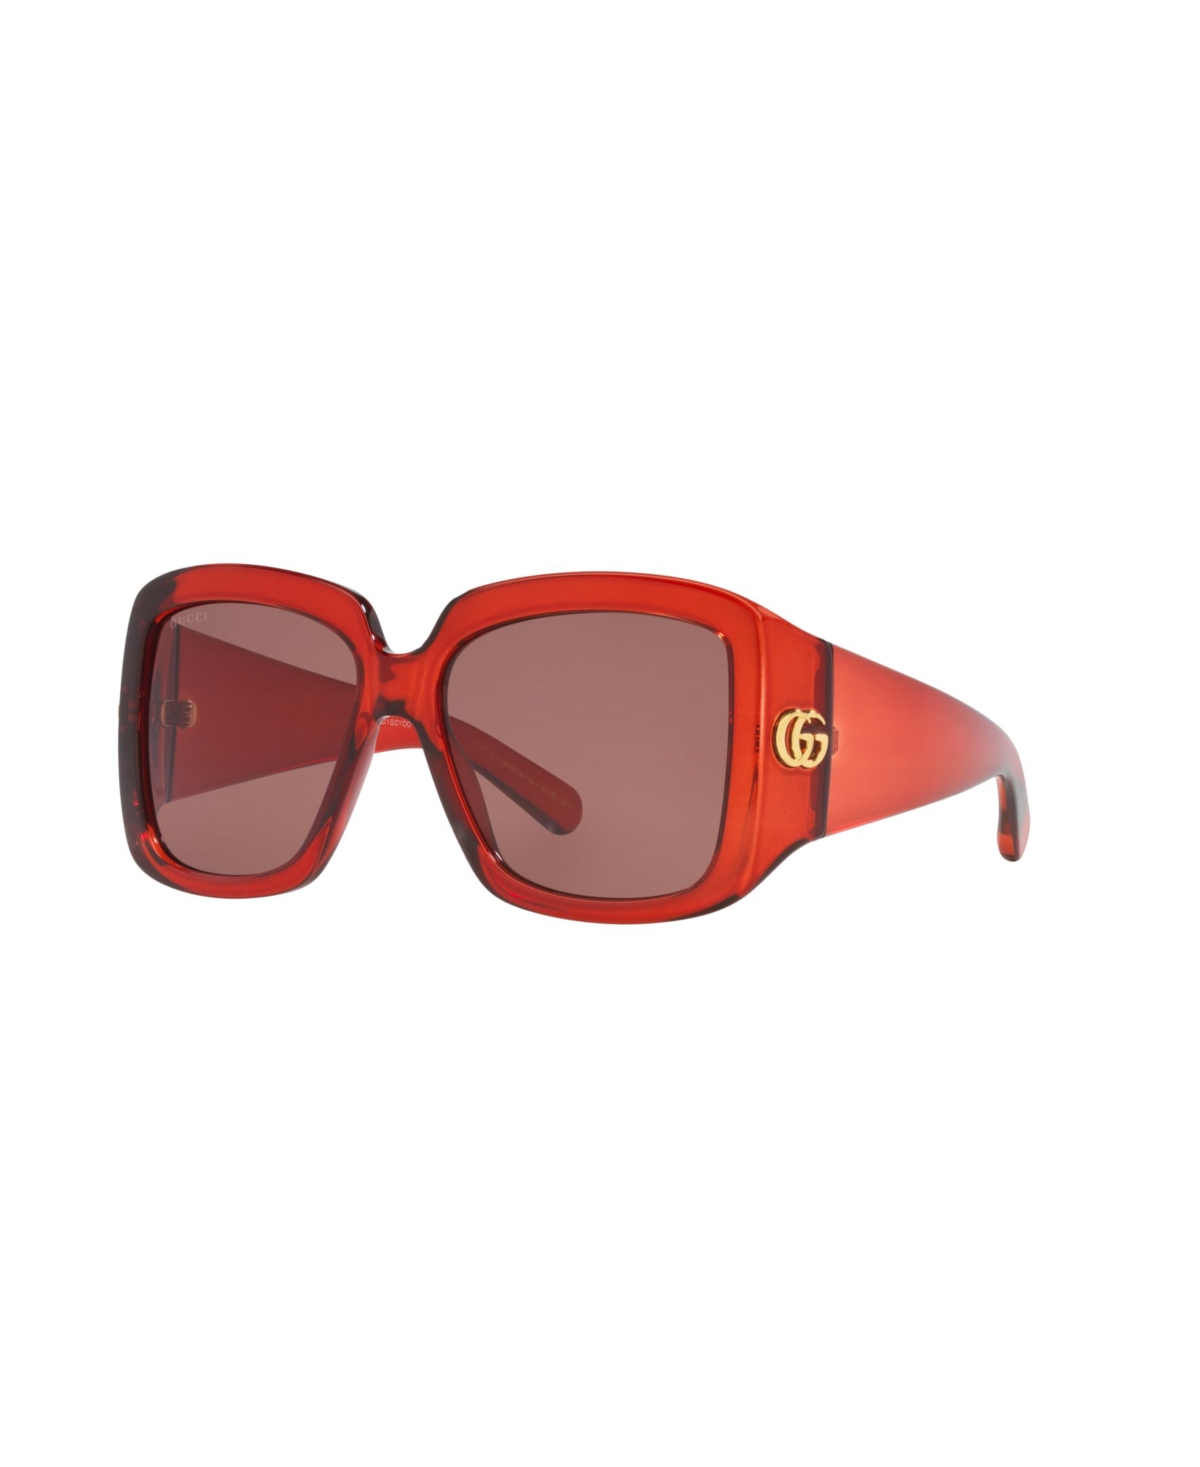 Women's Sunglasses, Gg1402S Gc002115 - Ivory